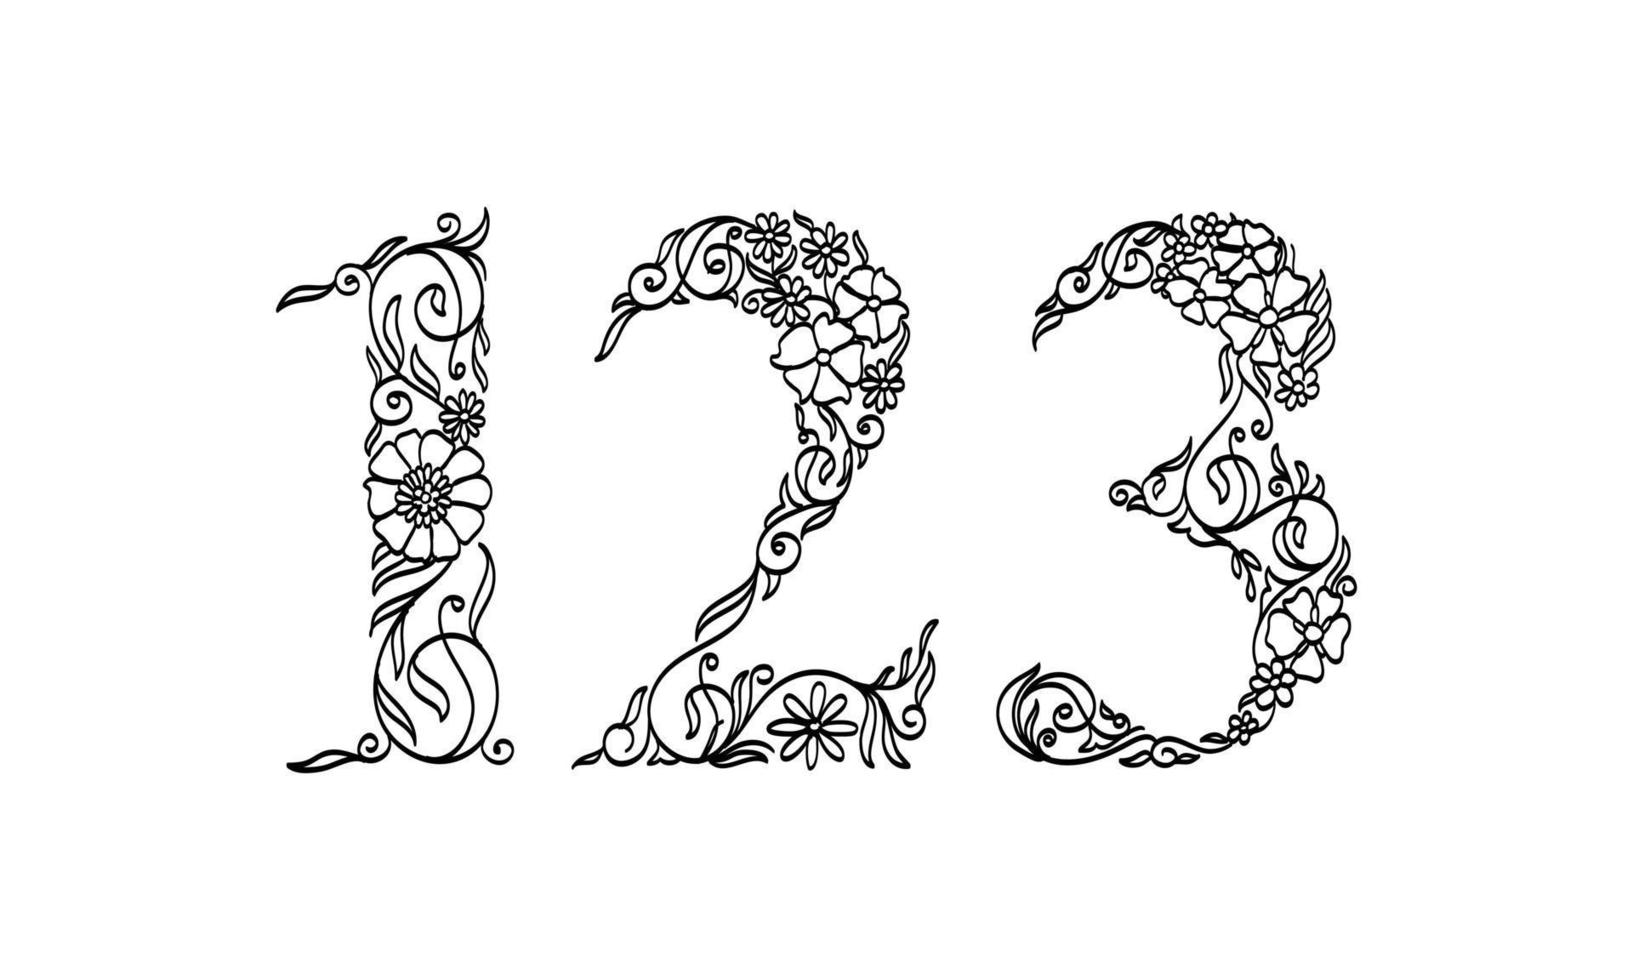 illustration florale numéro 1, 2, 3, police graphique vectorielle faite par des plantes à fleurs et à feuilles des dessins au trait créatifs dessinés à la main pour un style naturel abstrait et naturel dans une décoration de conception monochrome unique vecteur